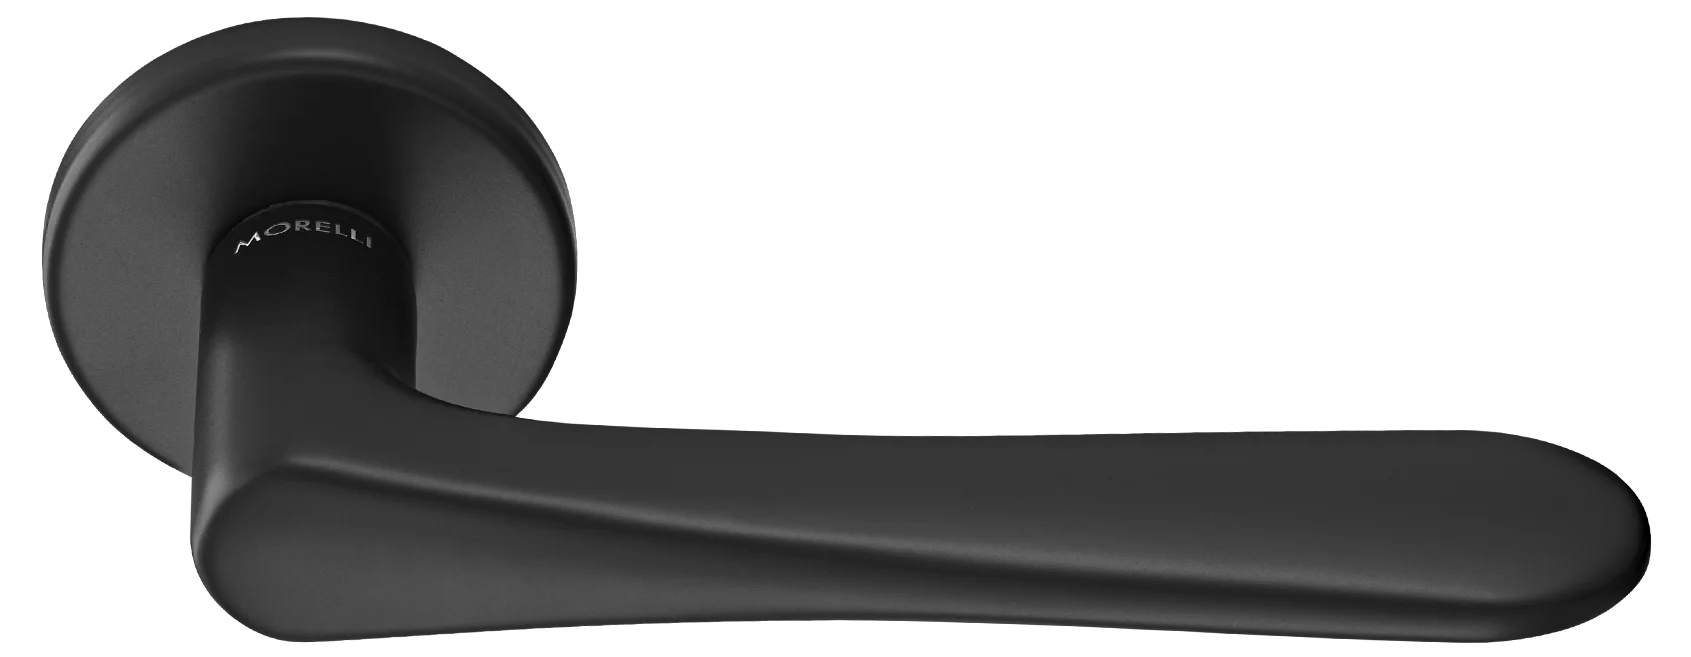 AULA R5 NERO, ручка дверная на розетке 7мм, цвет -  черный фото купить Оренбург